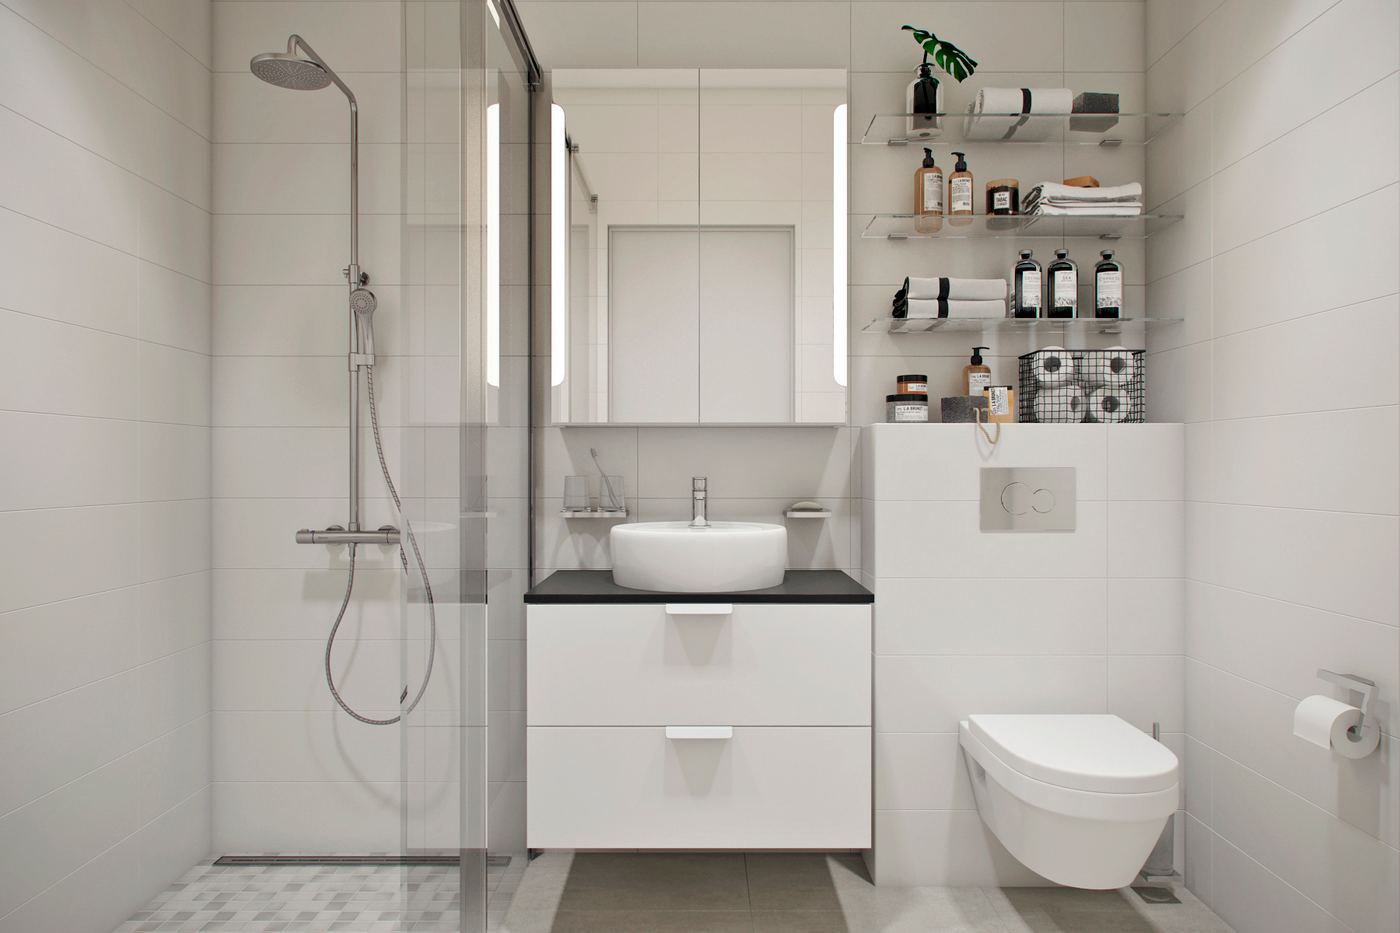 fürdőszoba - Megszokottól eltérő nappali-konyha elrendezés, modern stílus egy fiatal 42m2-es lakásában